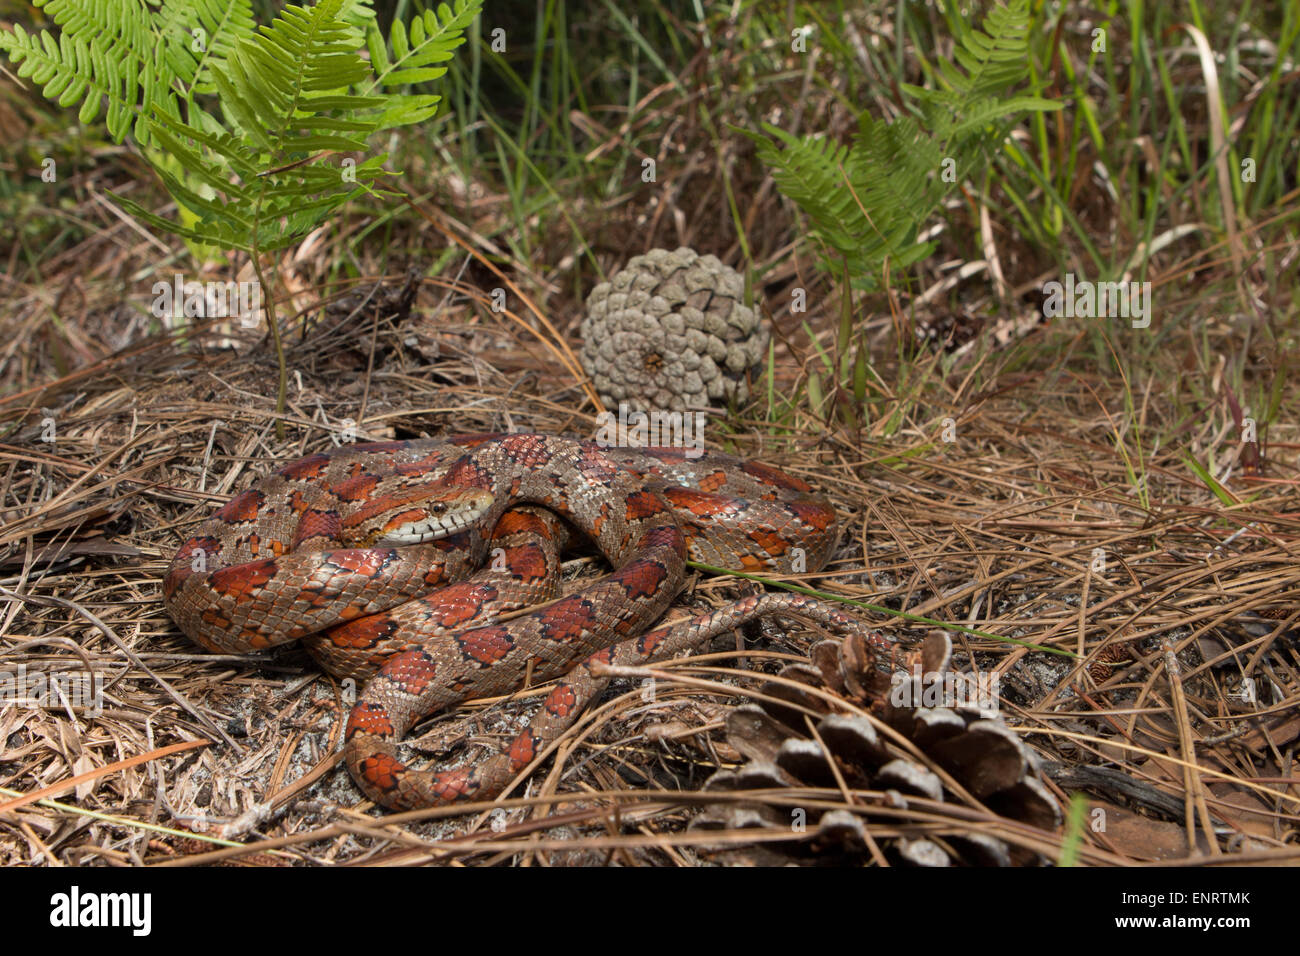 Kornnatter, Okeechobee County FL - Pantherophis guttatus Stockfoto